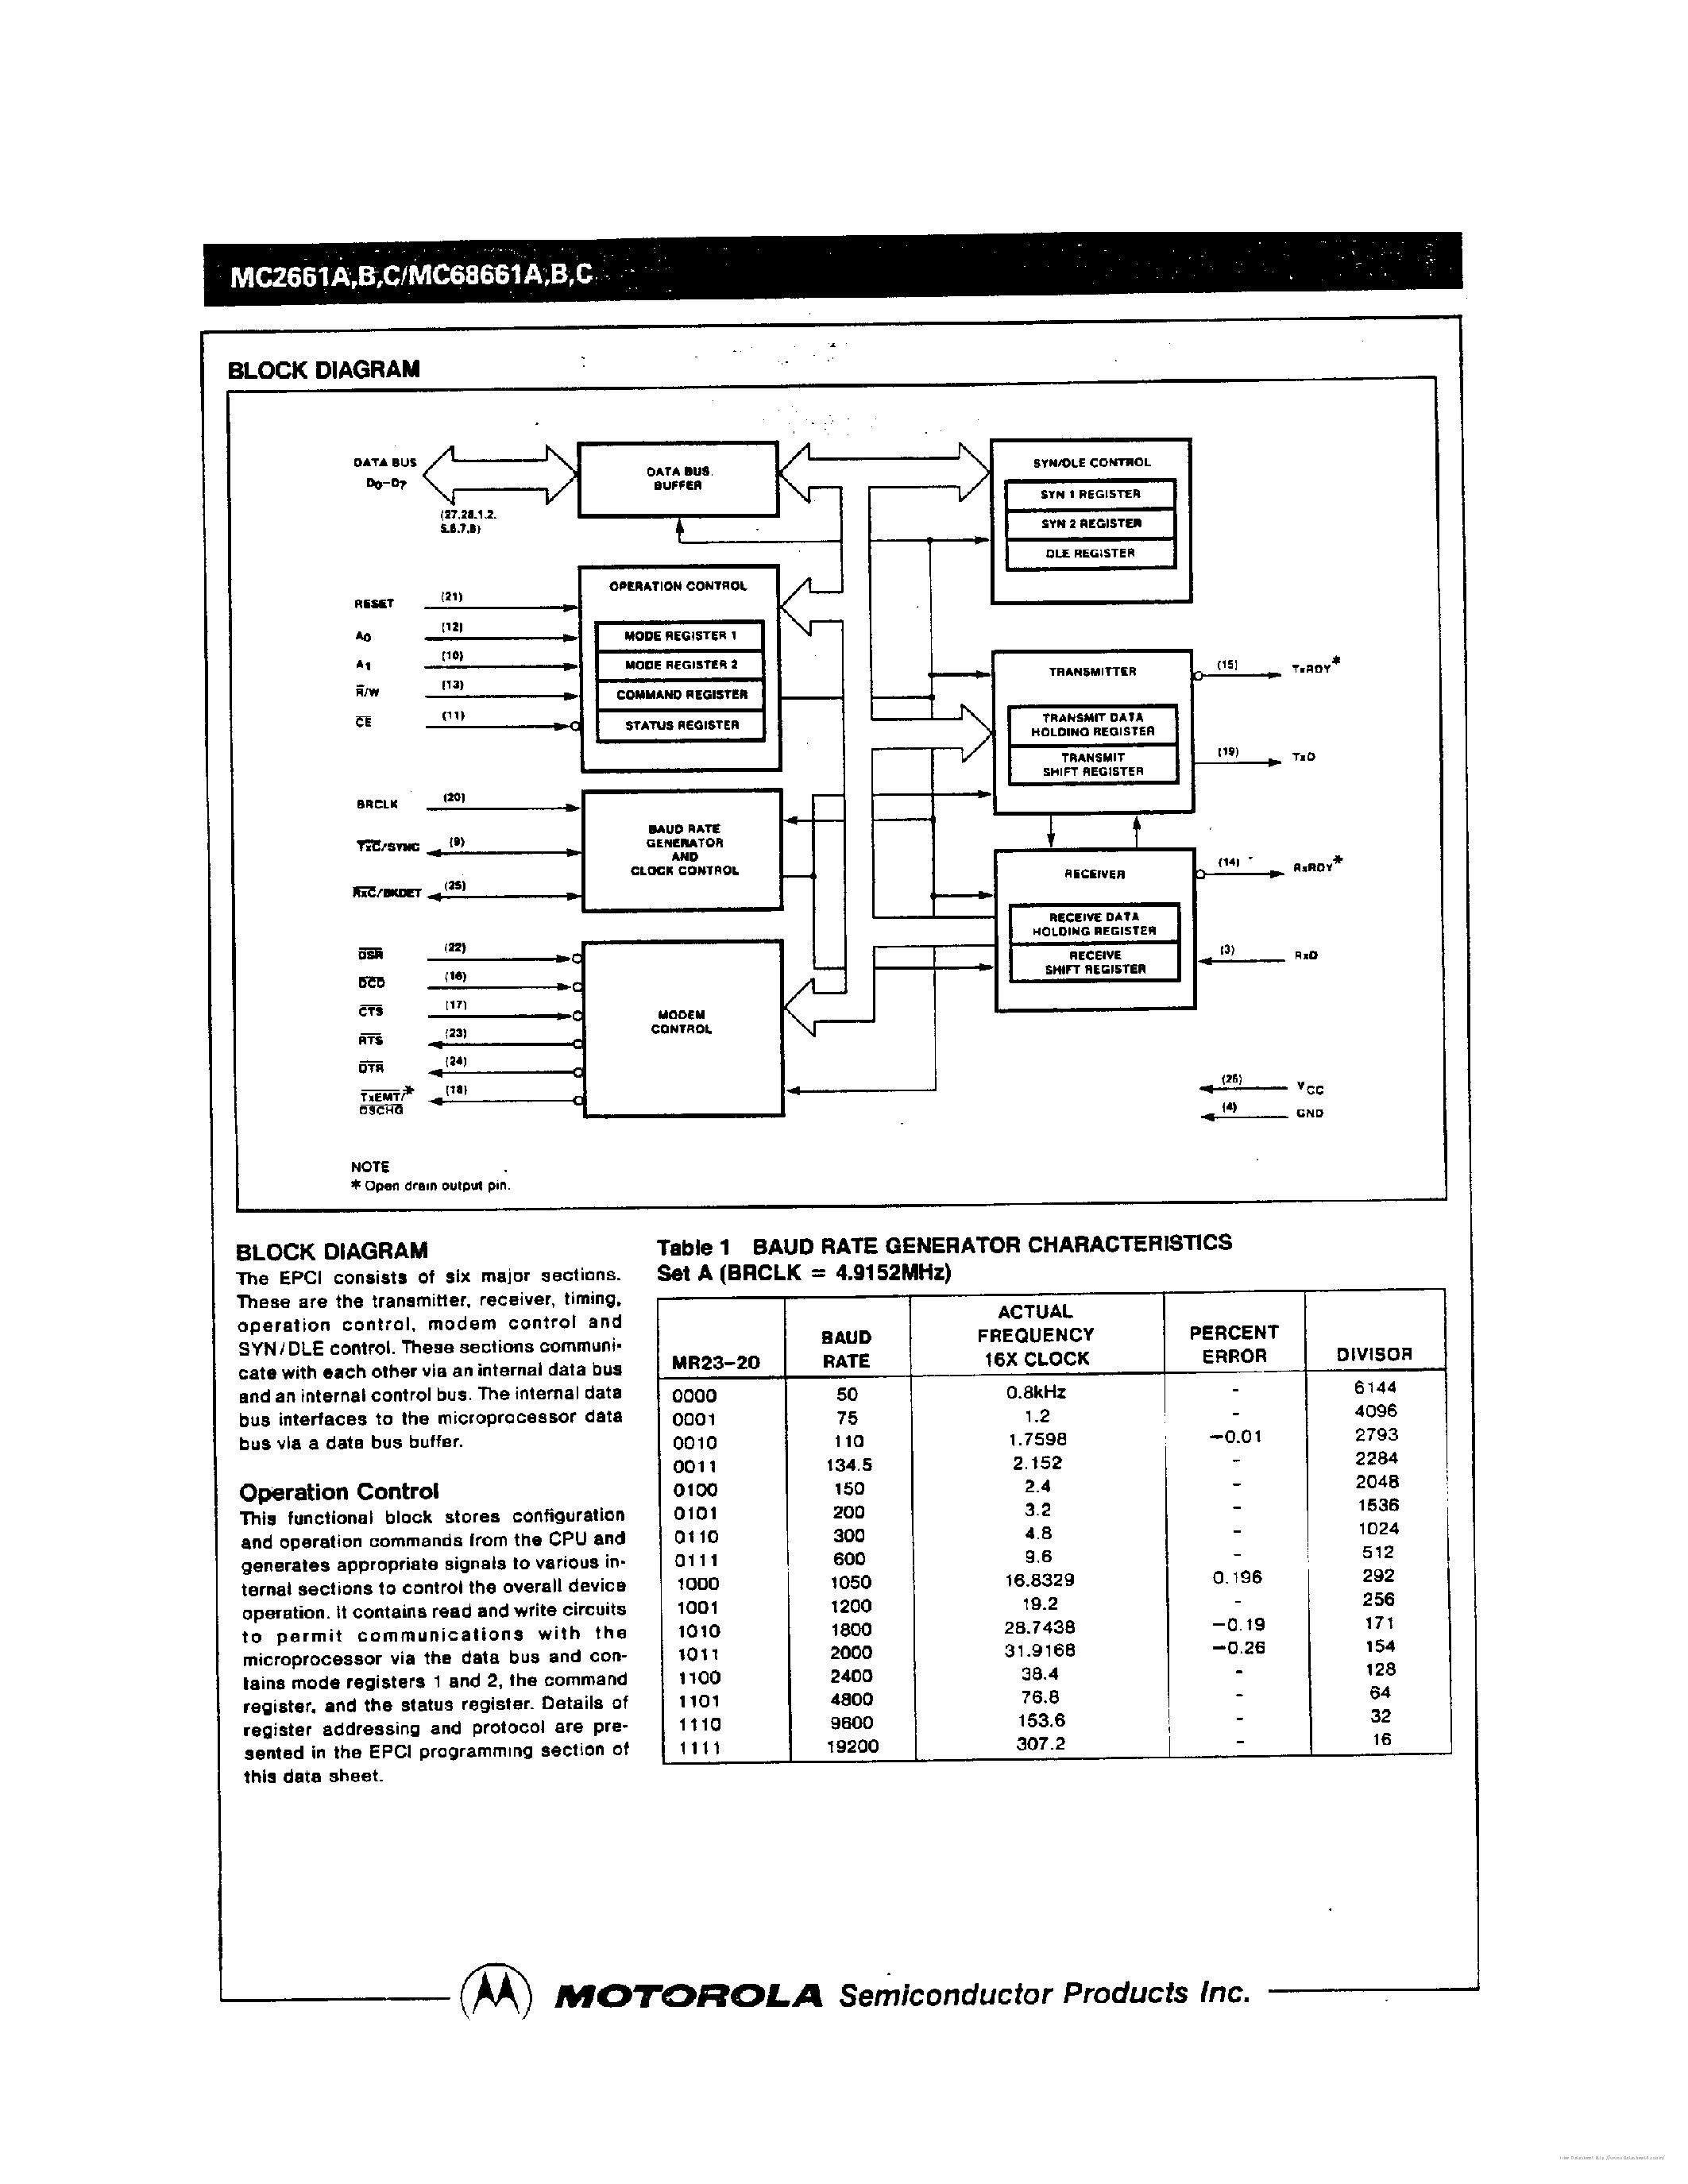 Datasheet MC68661A - page 2